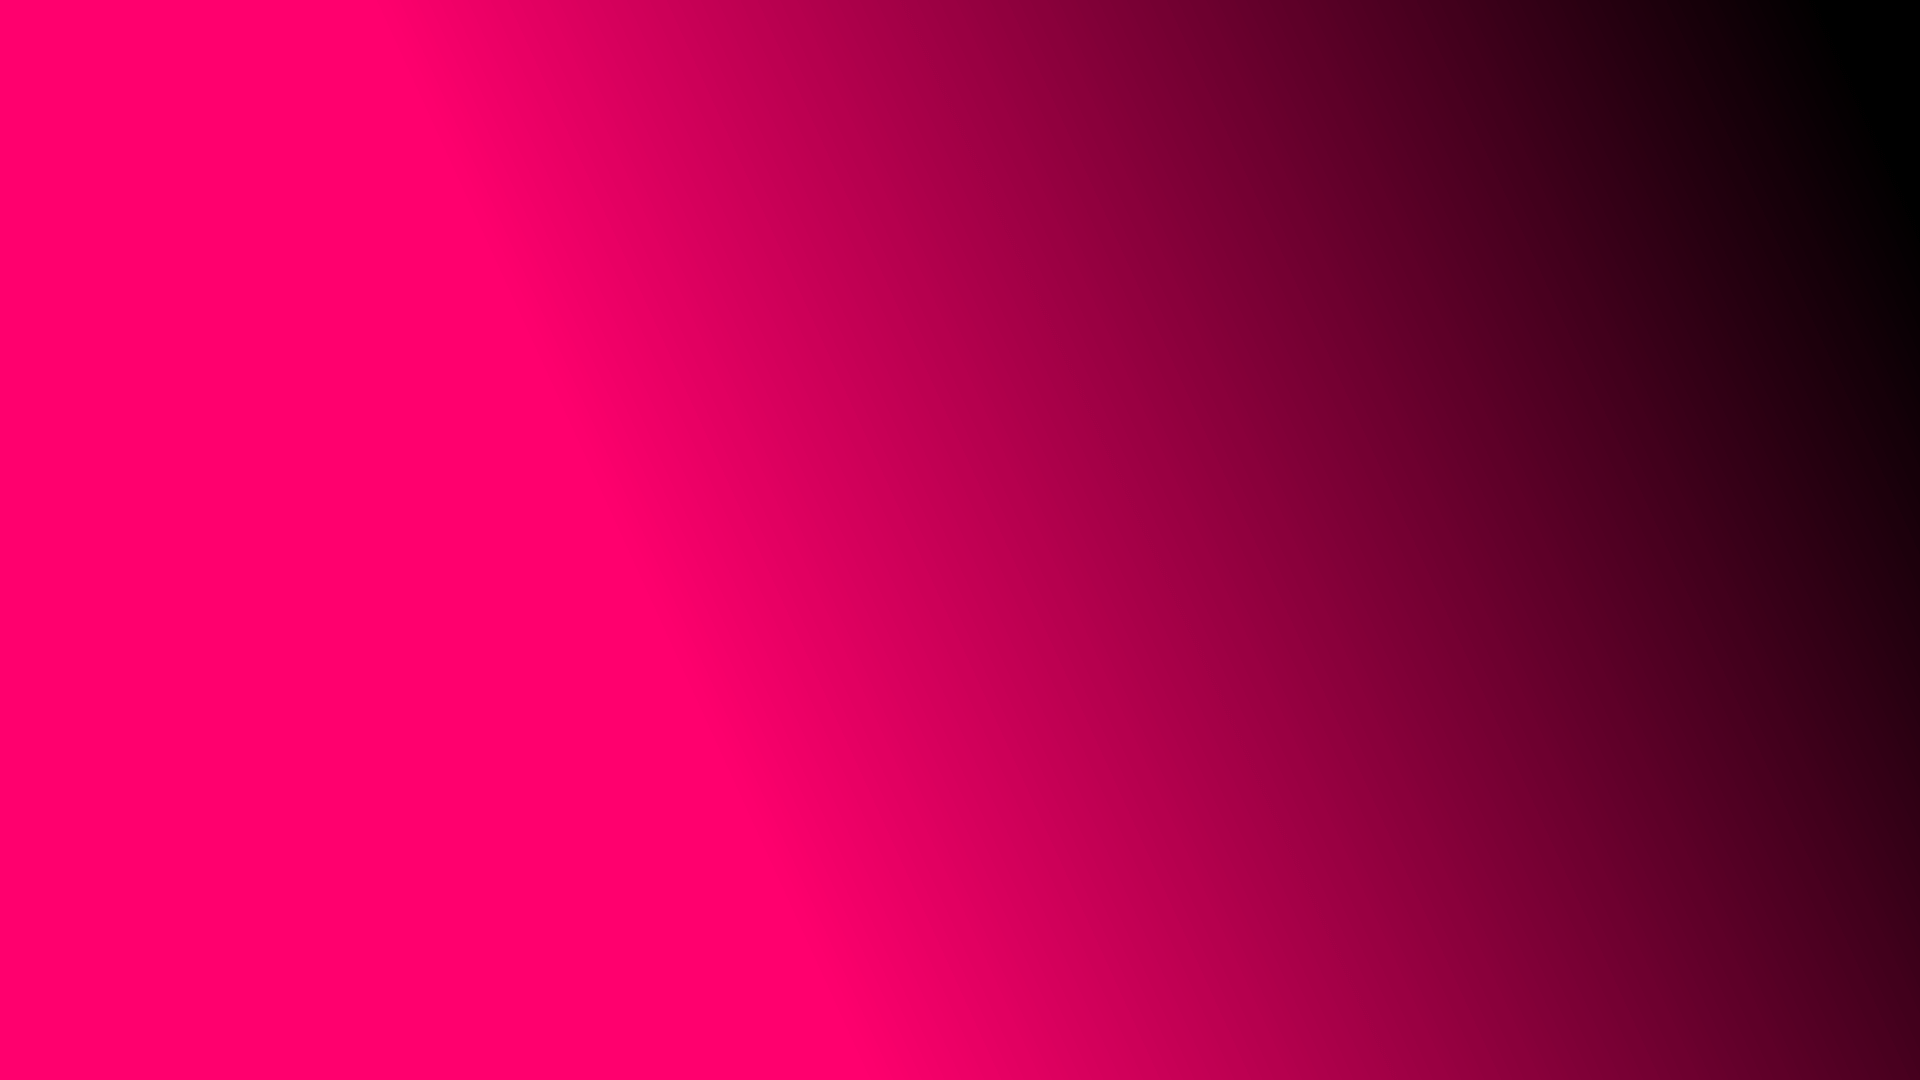 Pink backgrounds free desktop.